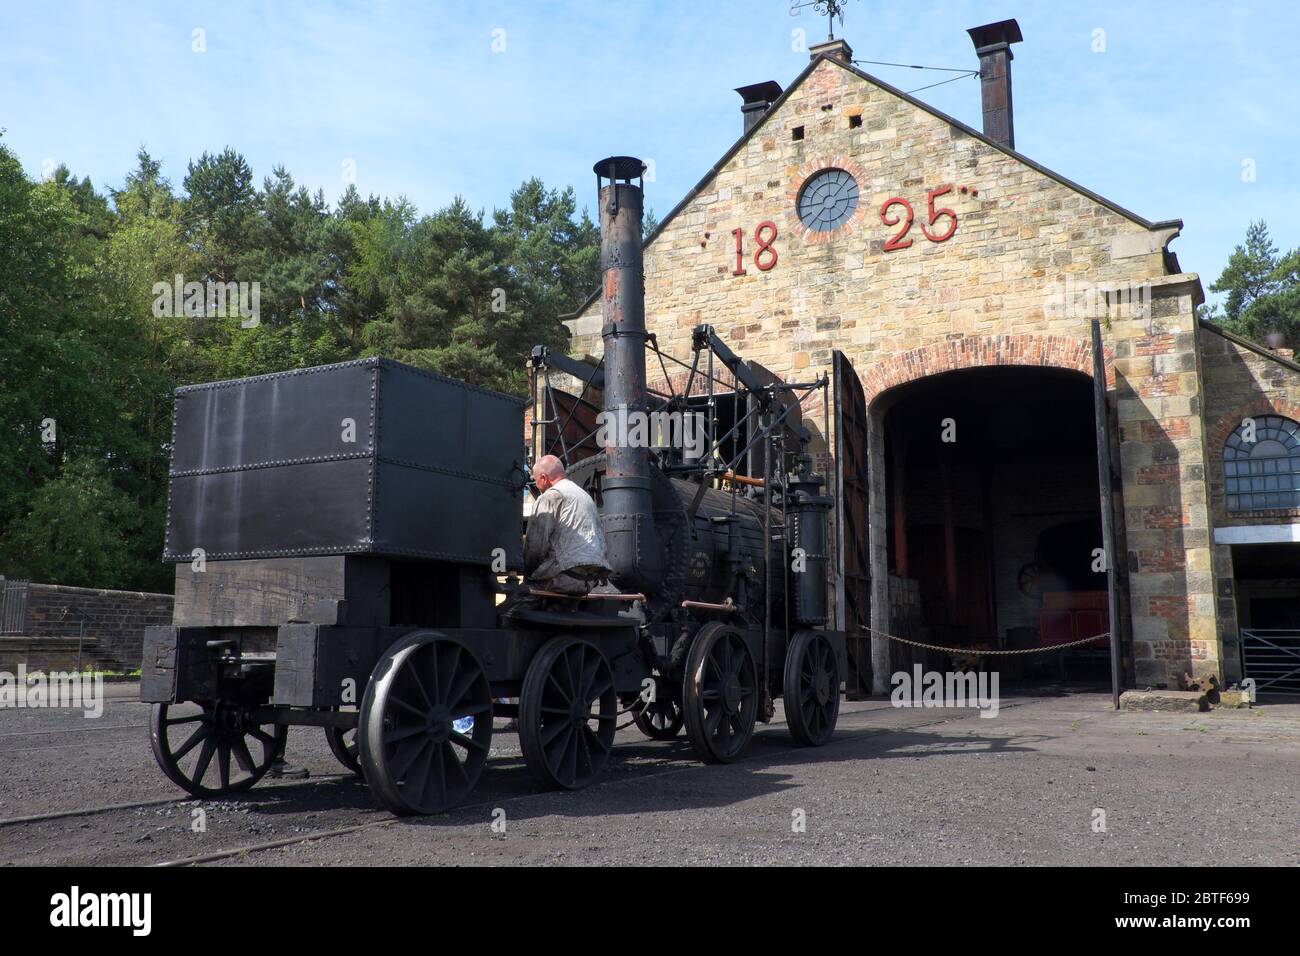 Une première locomotive à vapeur devant le Great Shed à Pockerley Wagonway, dans les années 1820, fait partie du musée Beamish du comté de Durham, en Angleterre Banque D'Images